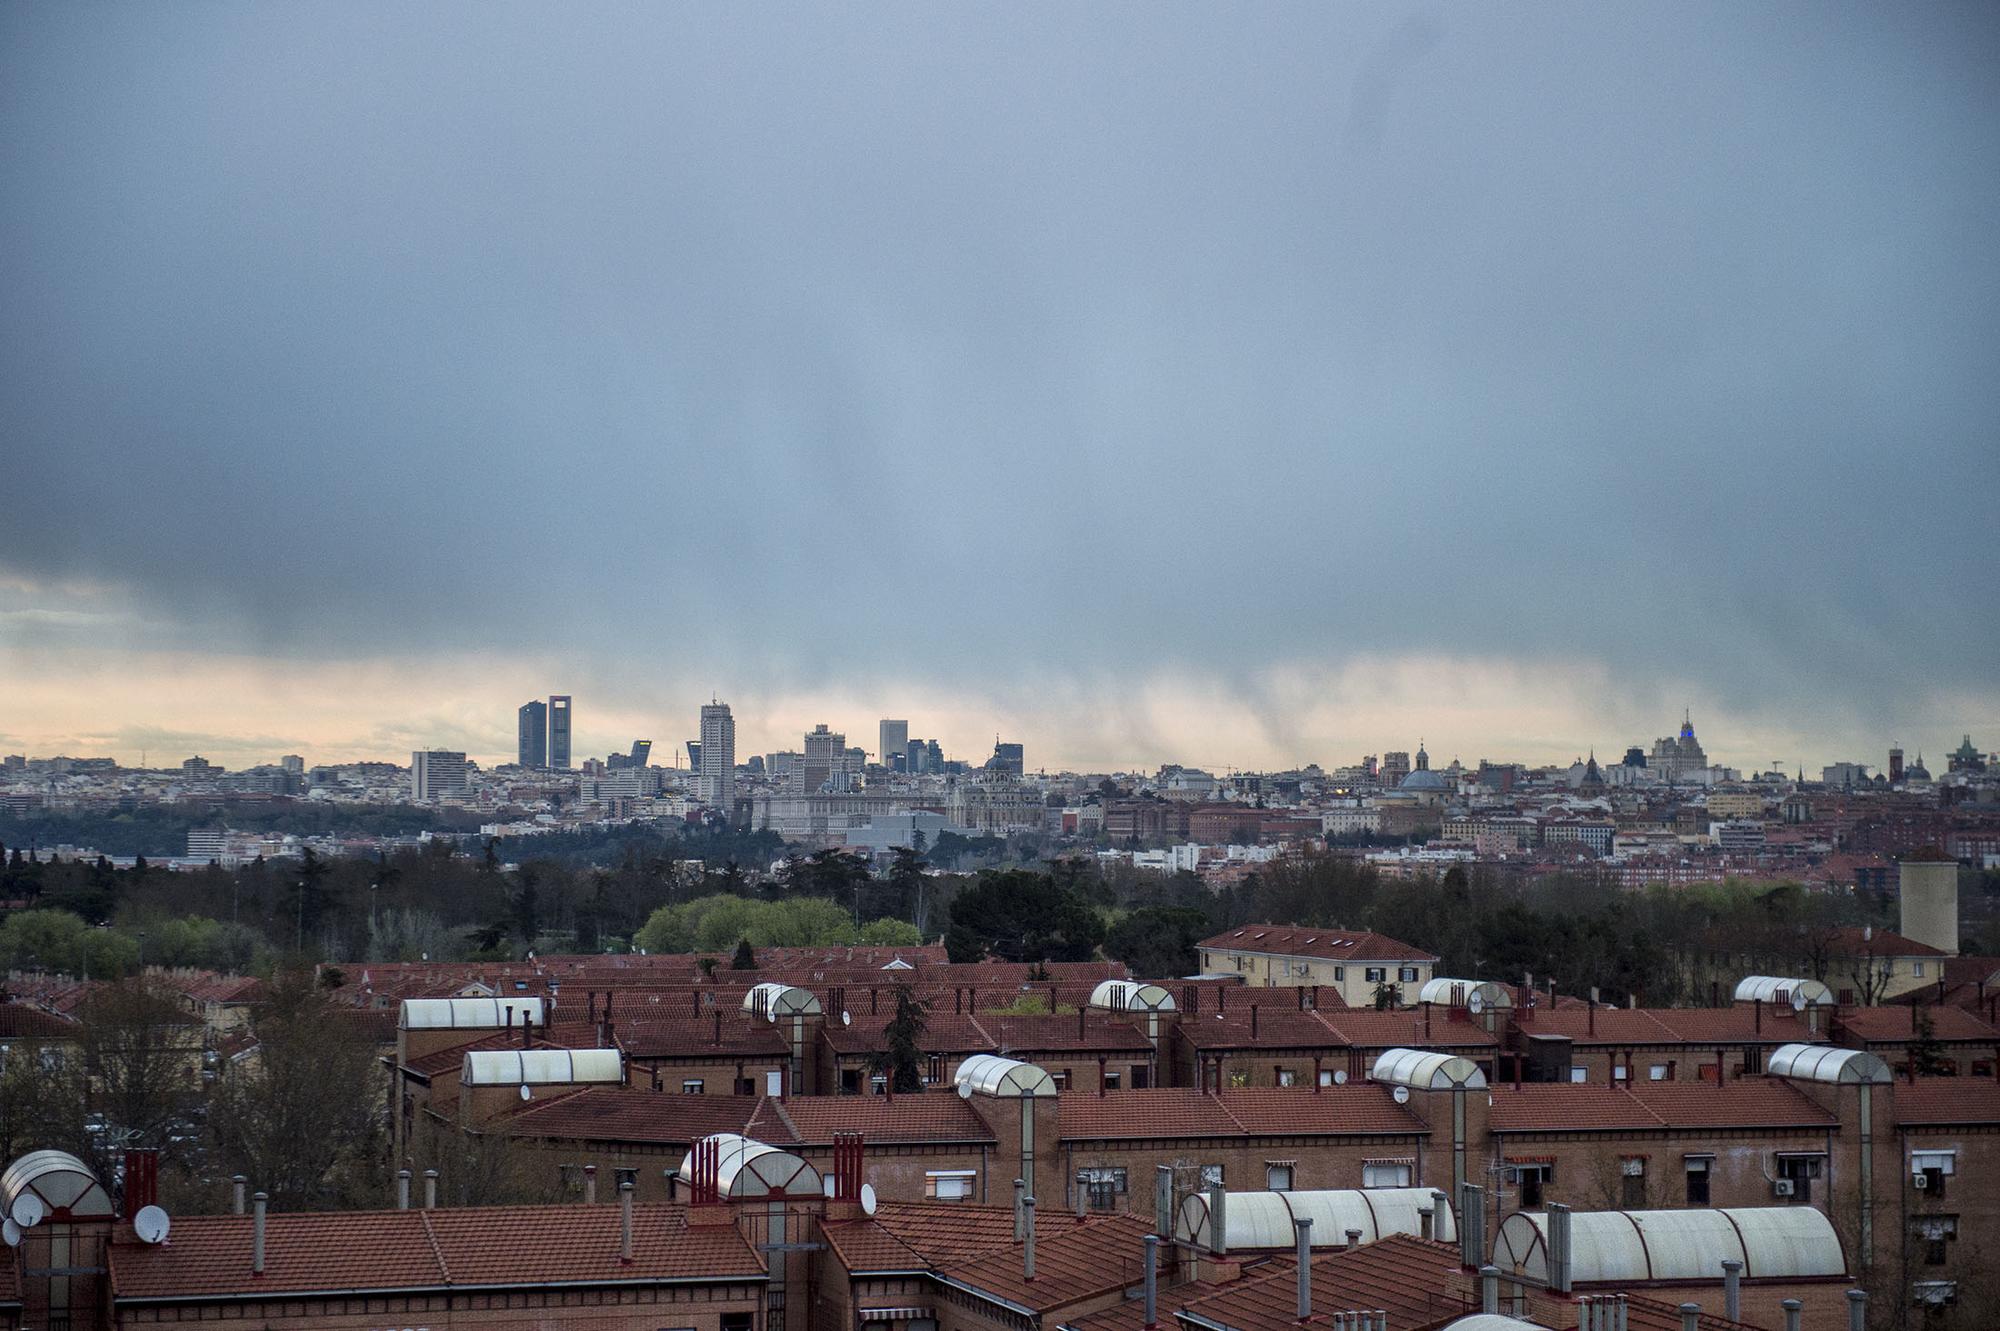 Una tormenta cae sobre el centro de Madrid, vista desde las azoteas de Carabanchel